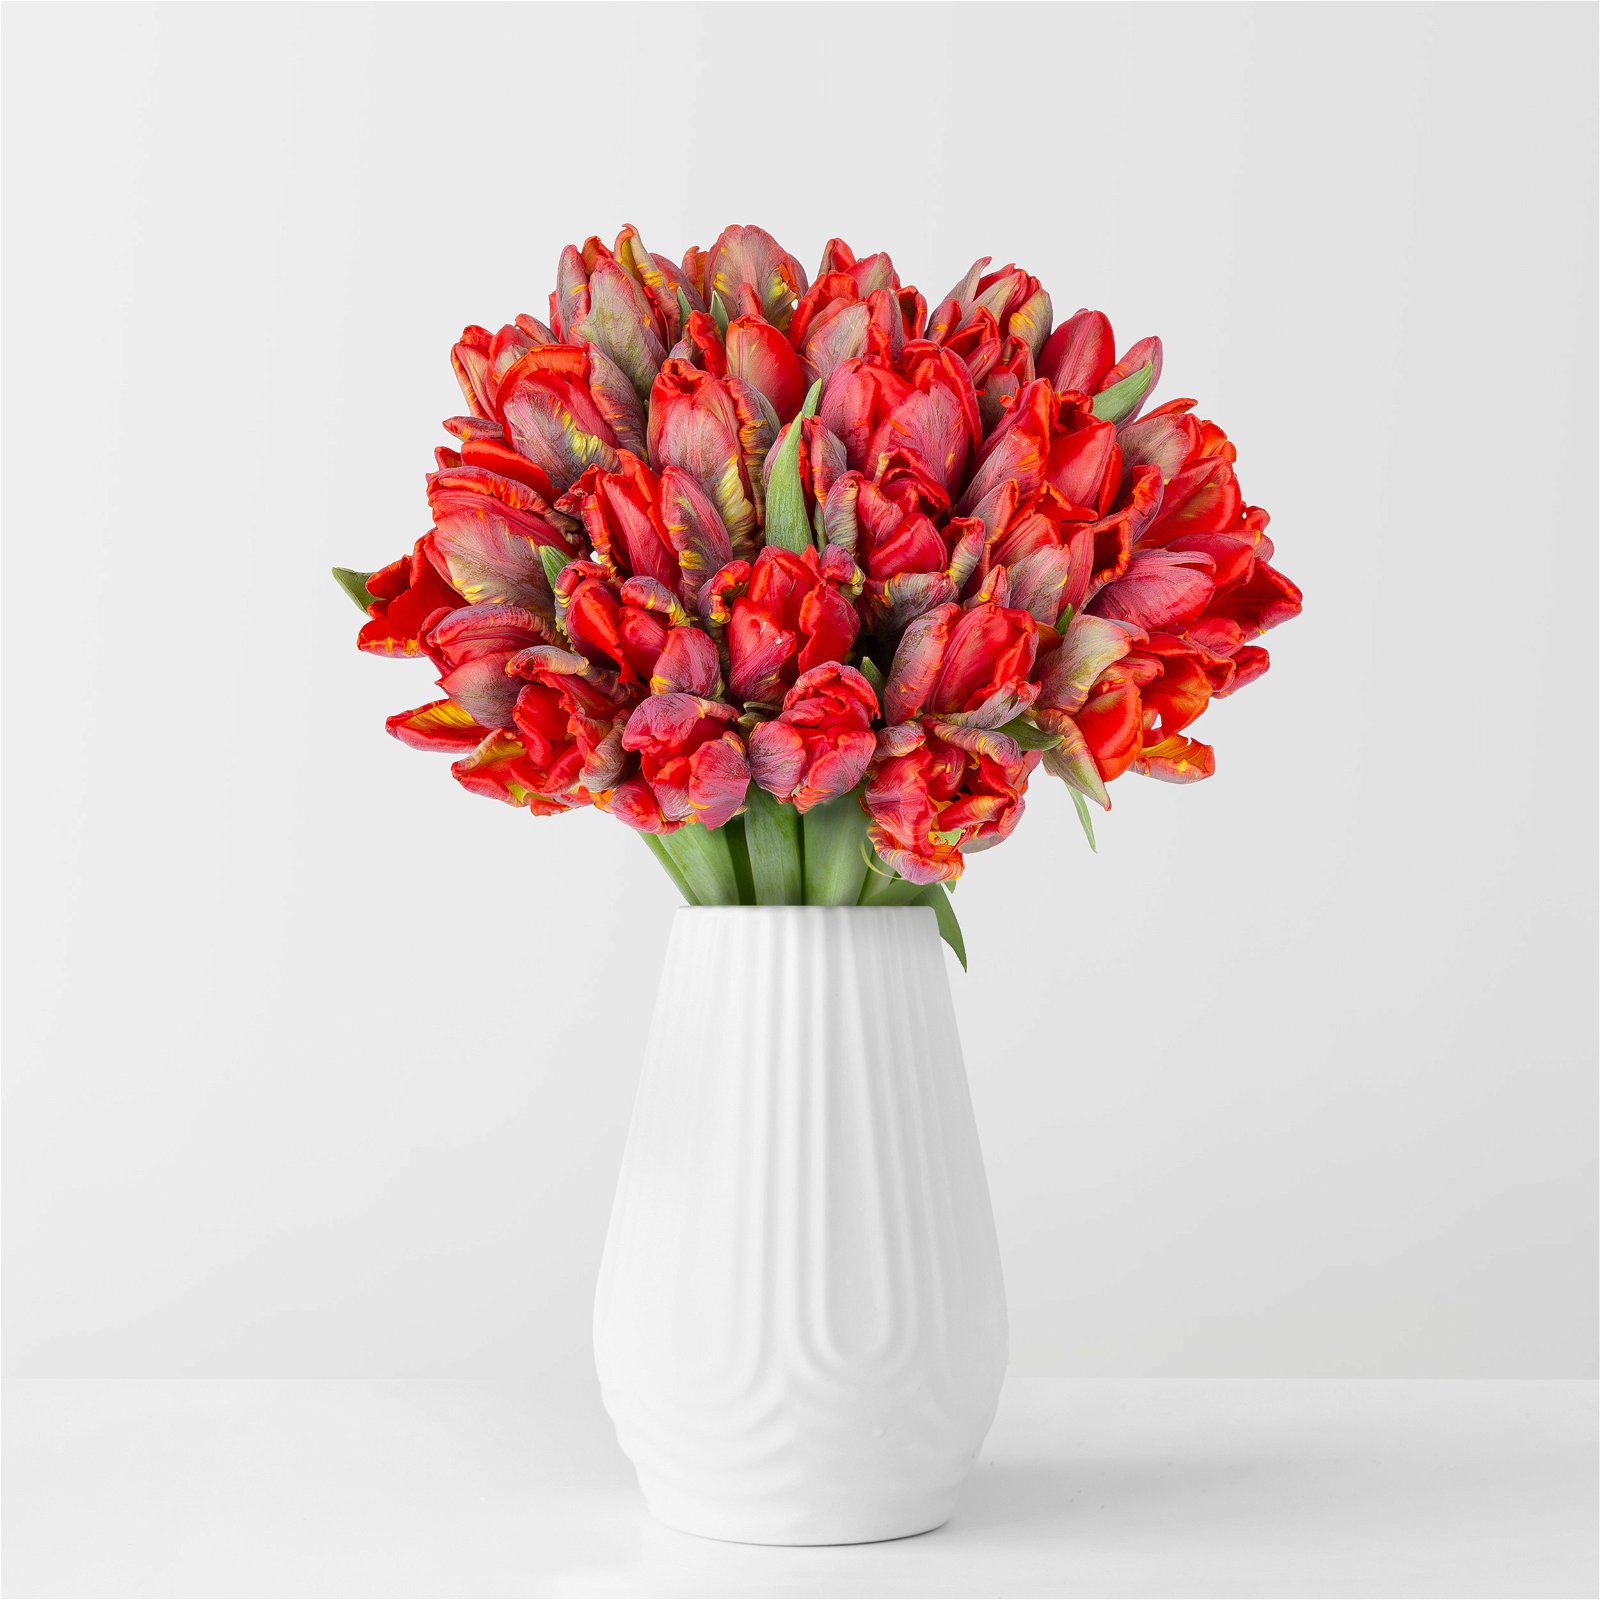 Blumenbund mit Tulpen 'Rococo', 30er-Bund, dunkelrot, inkl. gratis Grußkarte